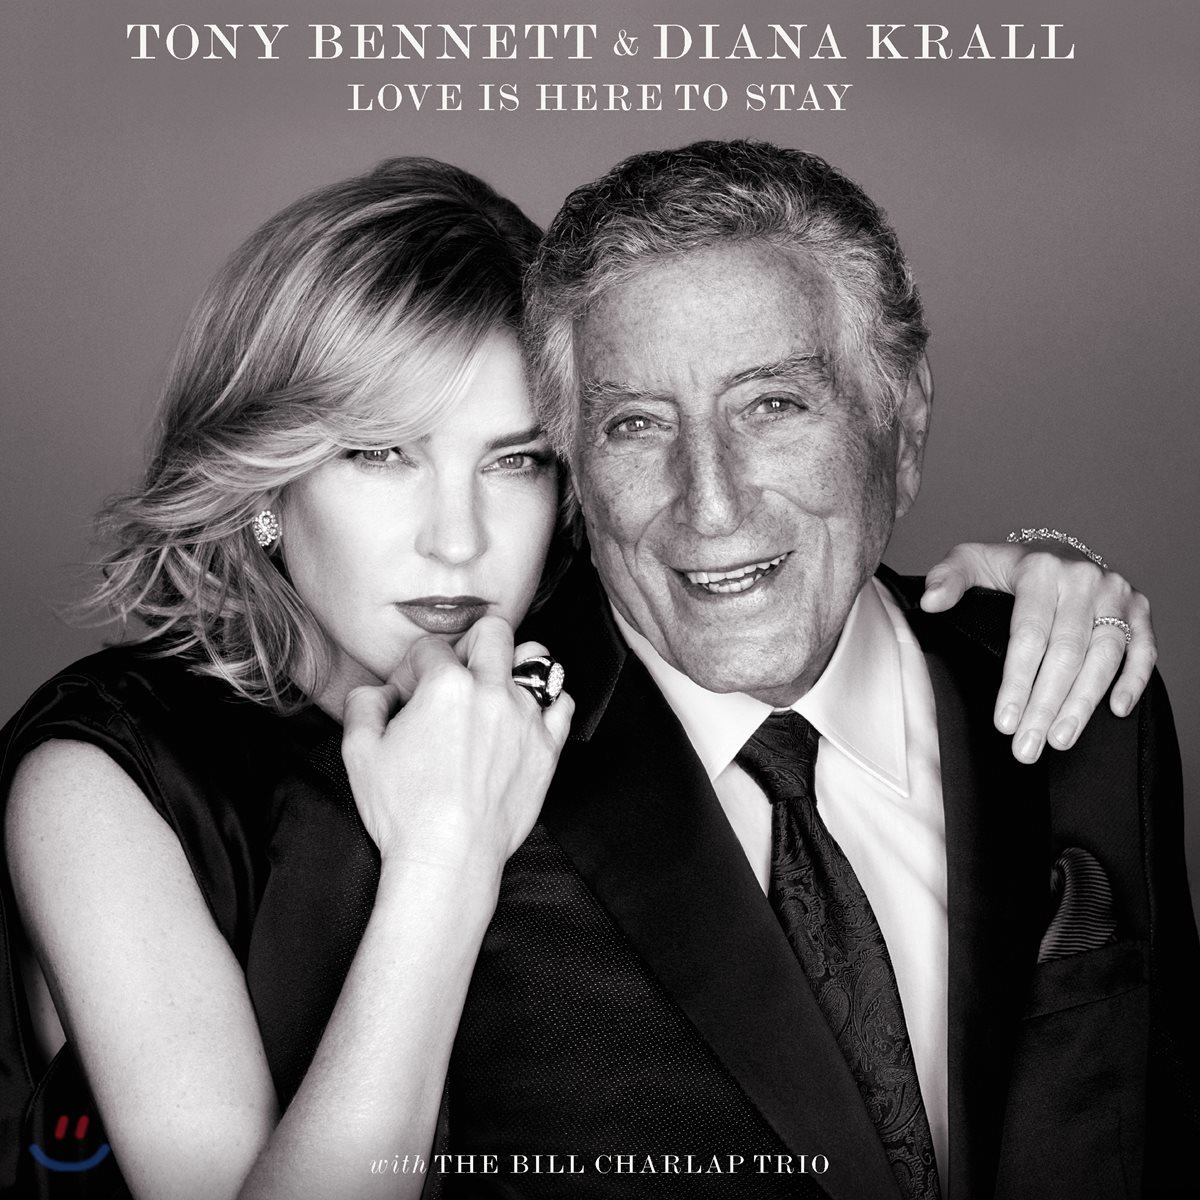 Tony Bennett / Diana Krall - Love Is Here To Stay 토니 베넷 / 다이애나 크롤 조지 거슈윈 탄생 120주년 기념 송북 [디럭스 버전]